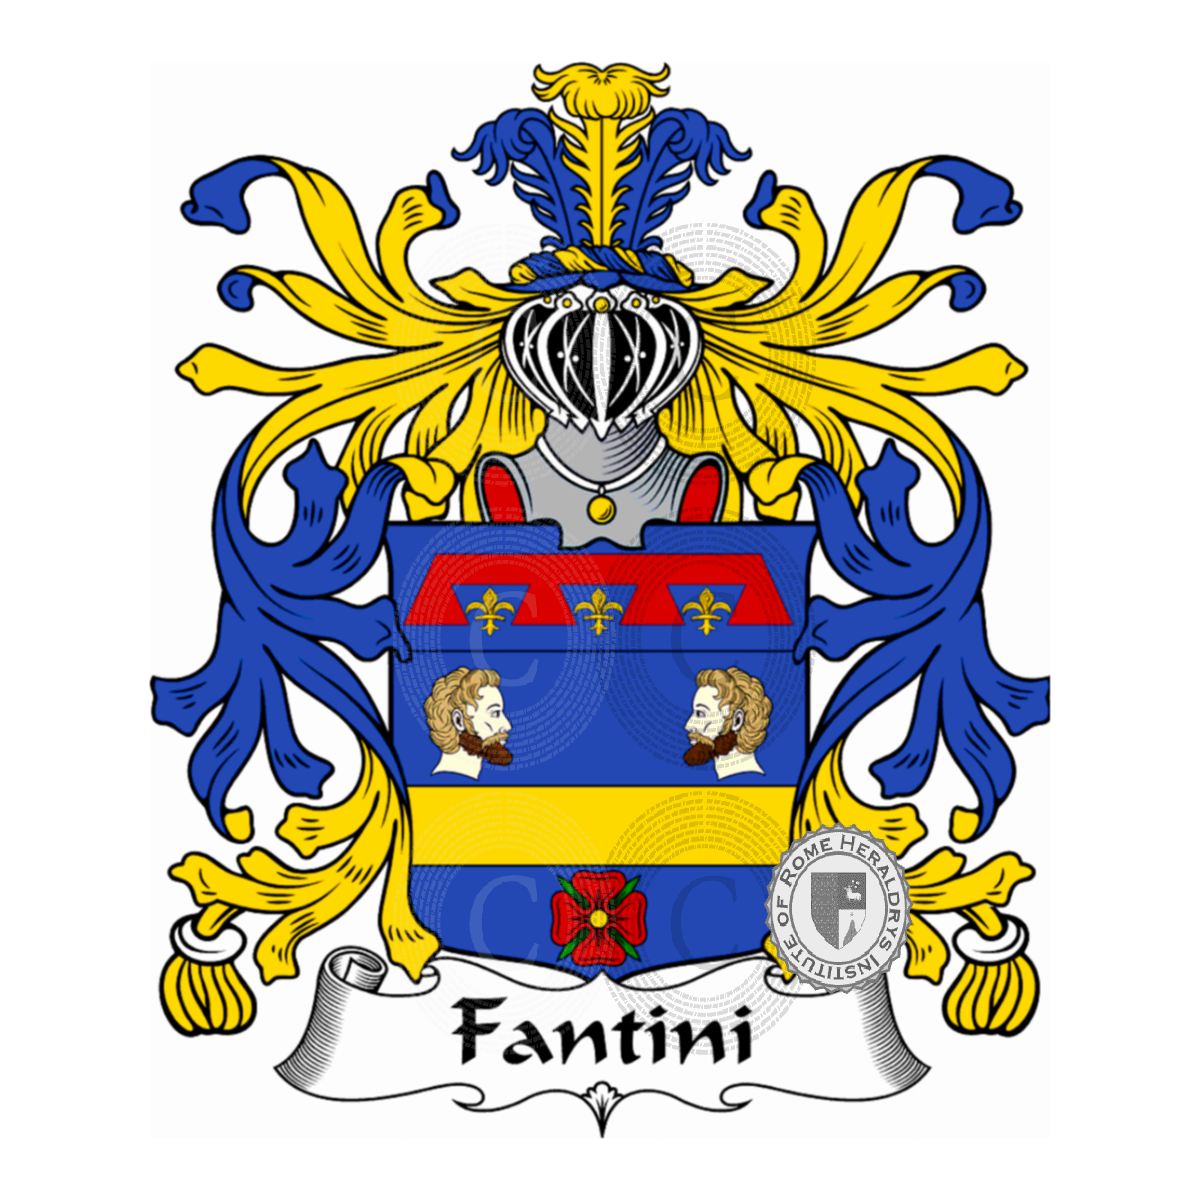 Wappen der FamilieFantini, Fantini da Tredozio,Fantini del Nicchio,Infantini